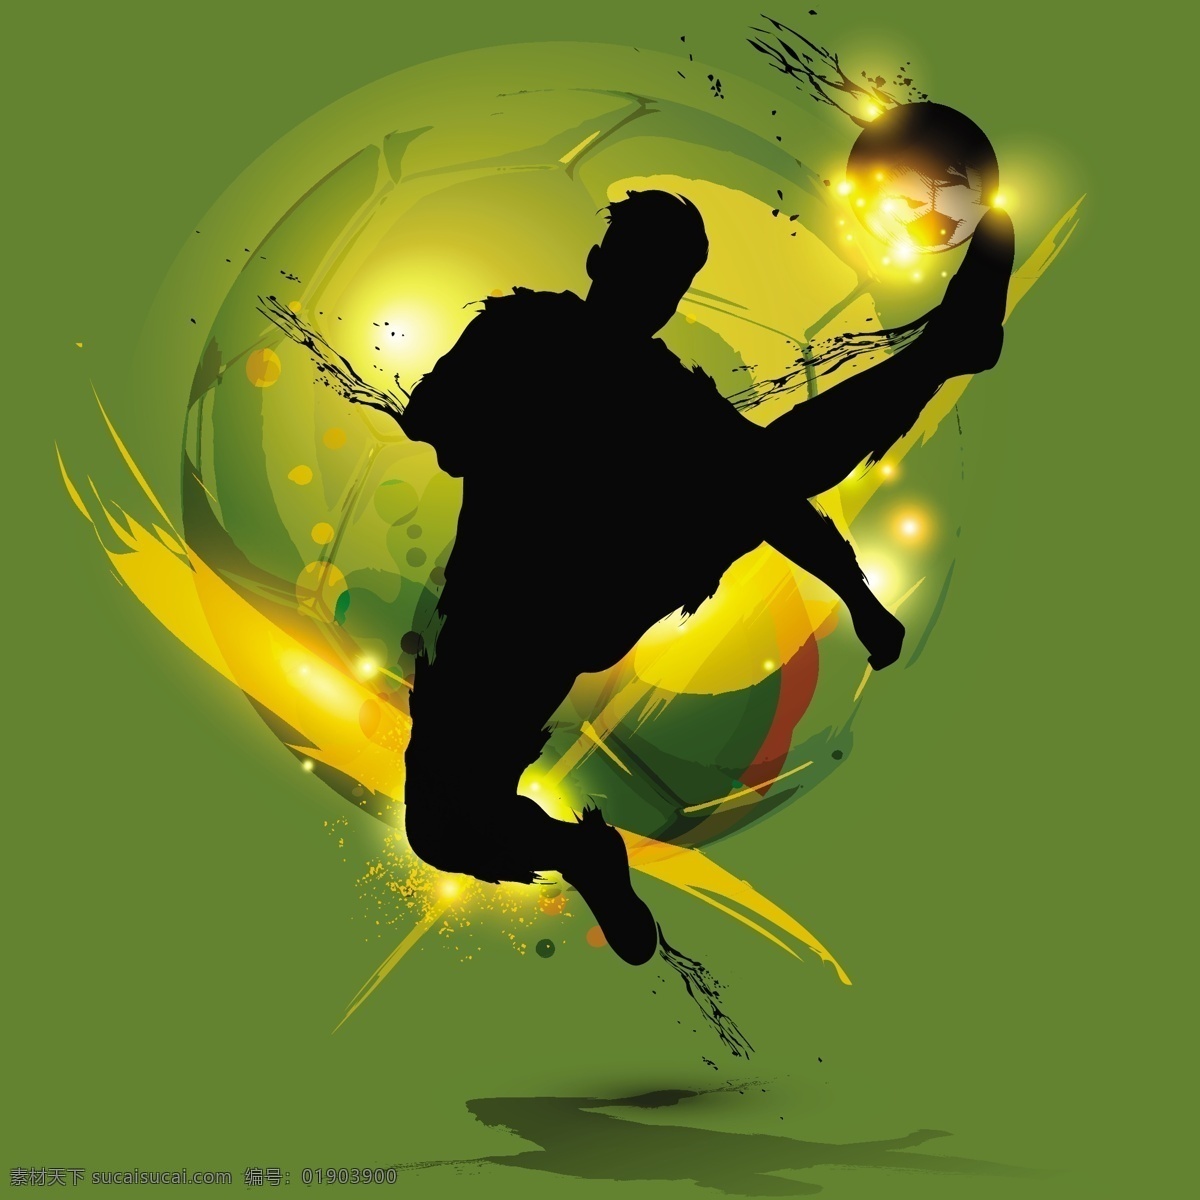 踢球 足球 欧洲世界杯 手绘 草坪 足球场 世界杯 欧洲杯 亚洲杯 世界杯海报 世界杯背景 足球俱乐部 足球运动 文化艺术 体育运动